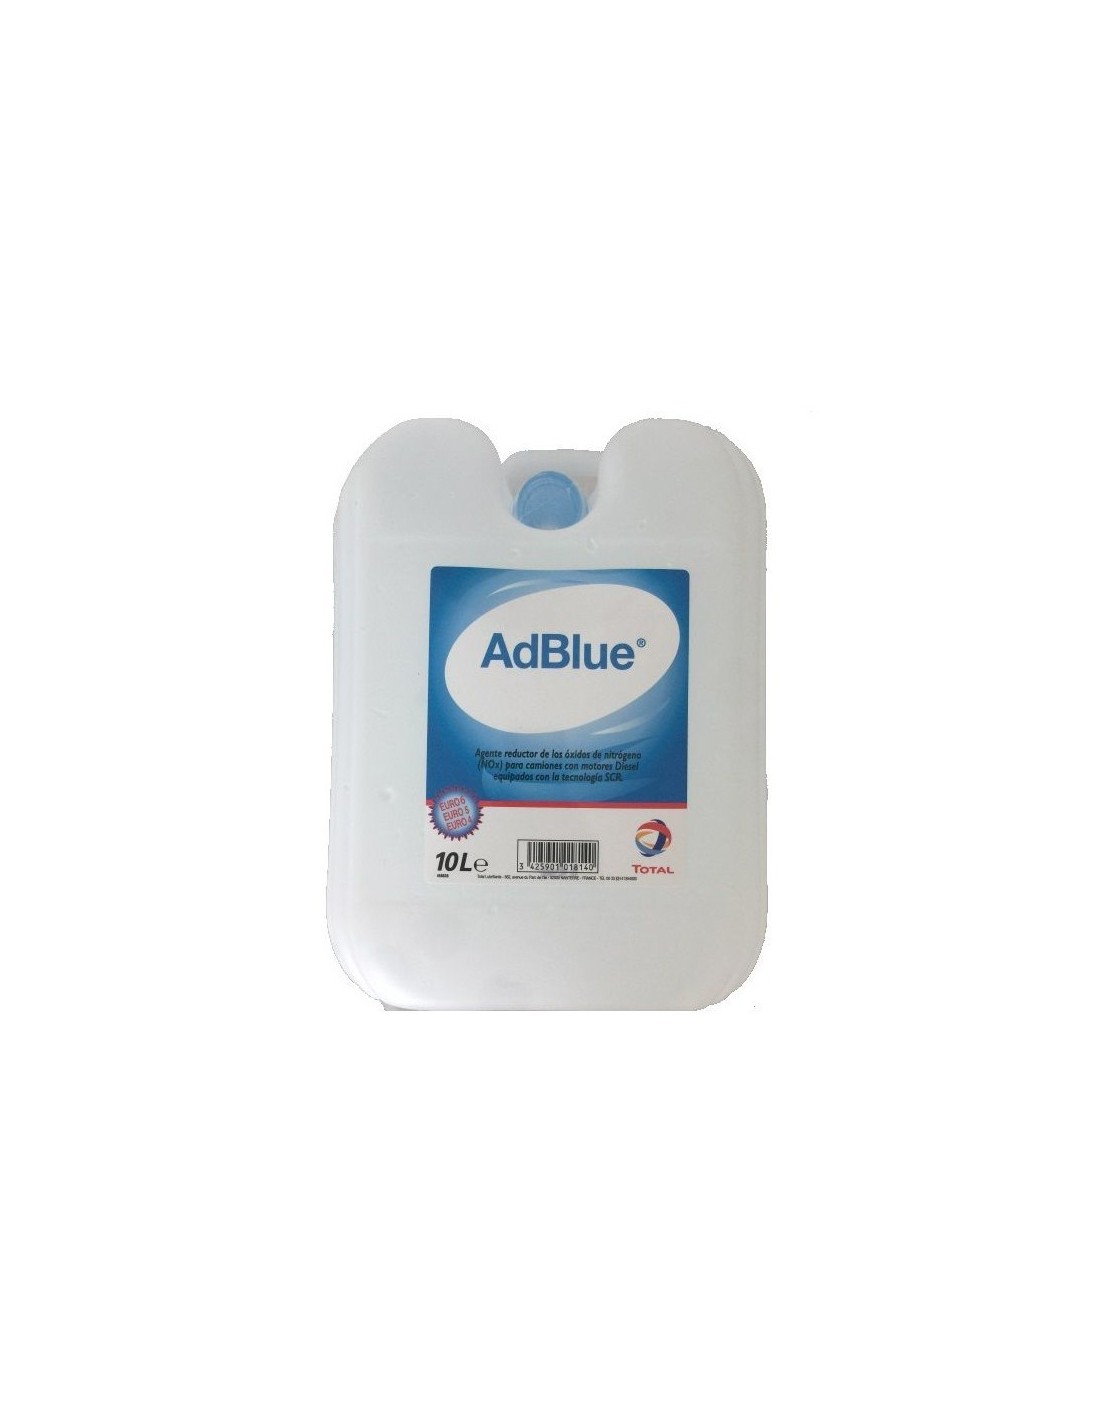 AdBlue, Total 10L - 25,90€ -  Capacidad 10 Litros